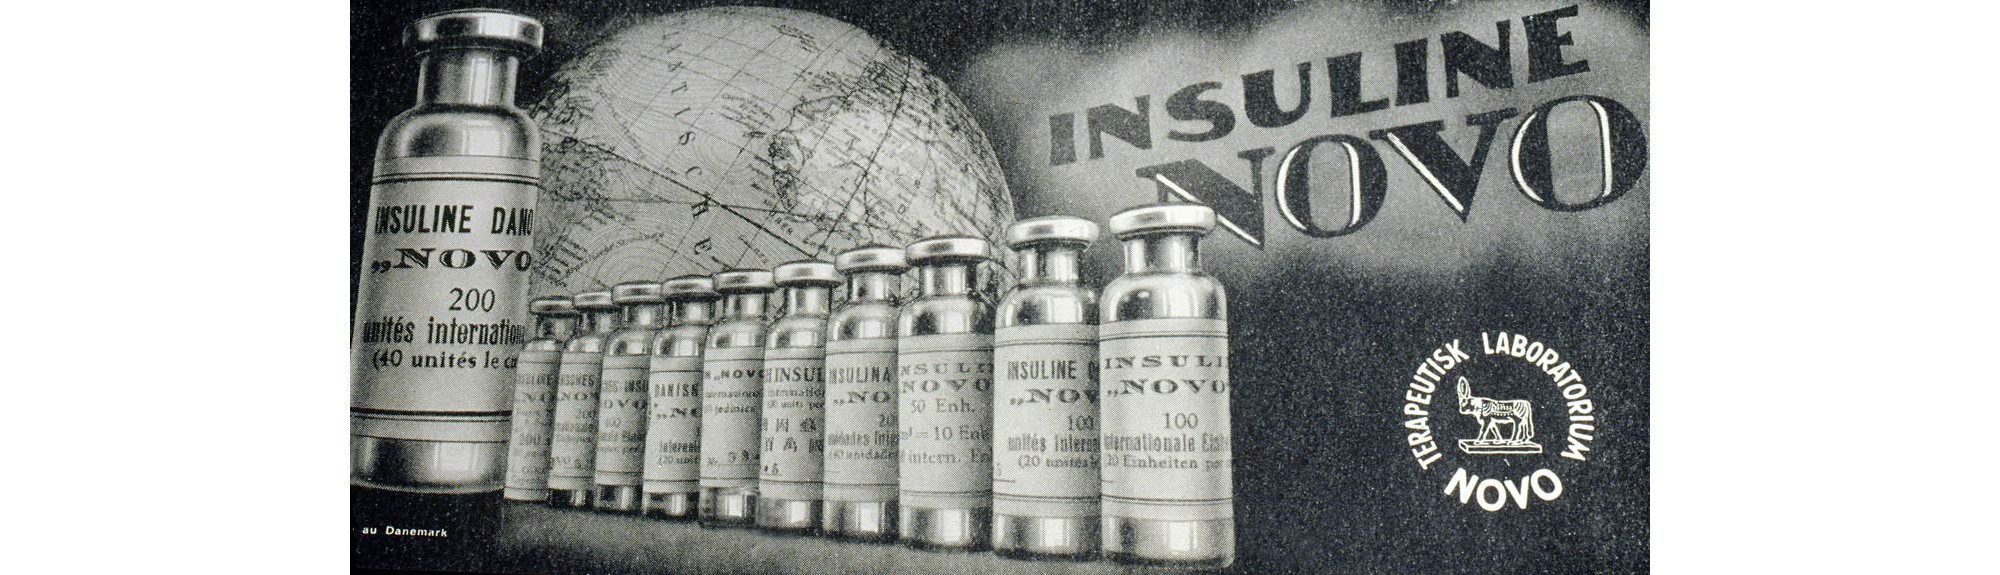 Insulin Novo oglas leta 1930.